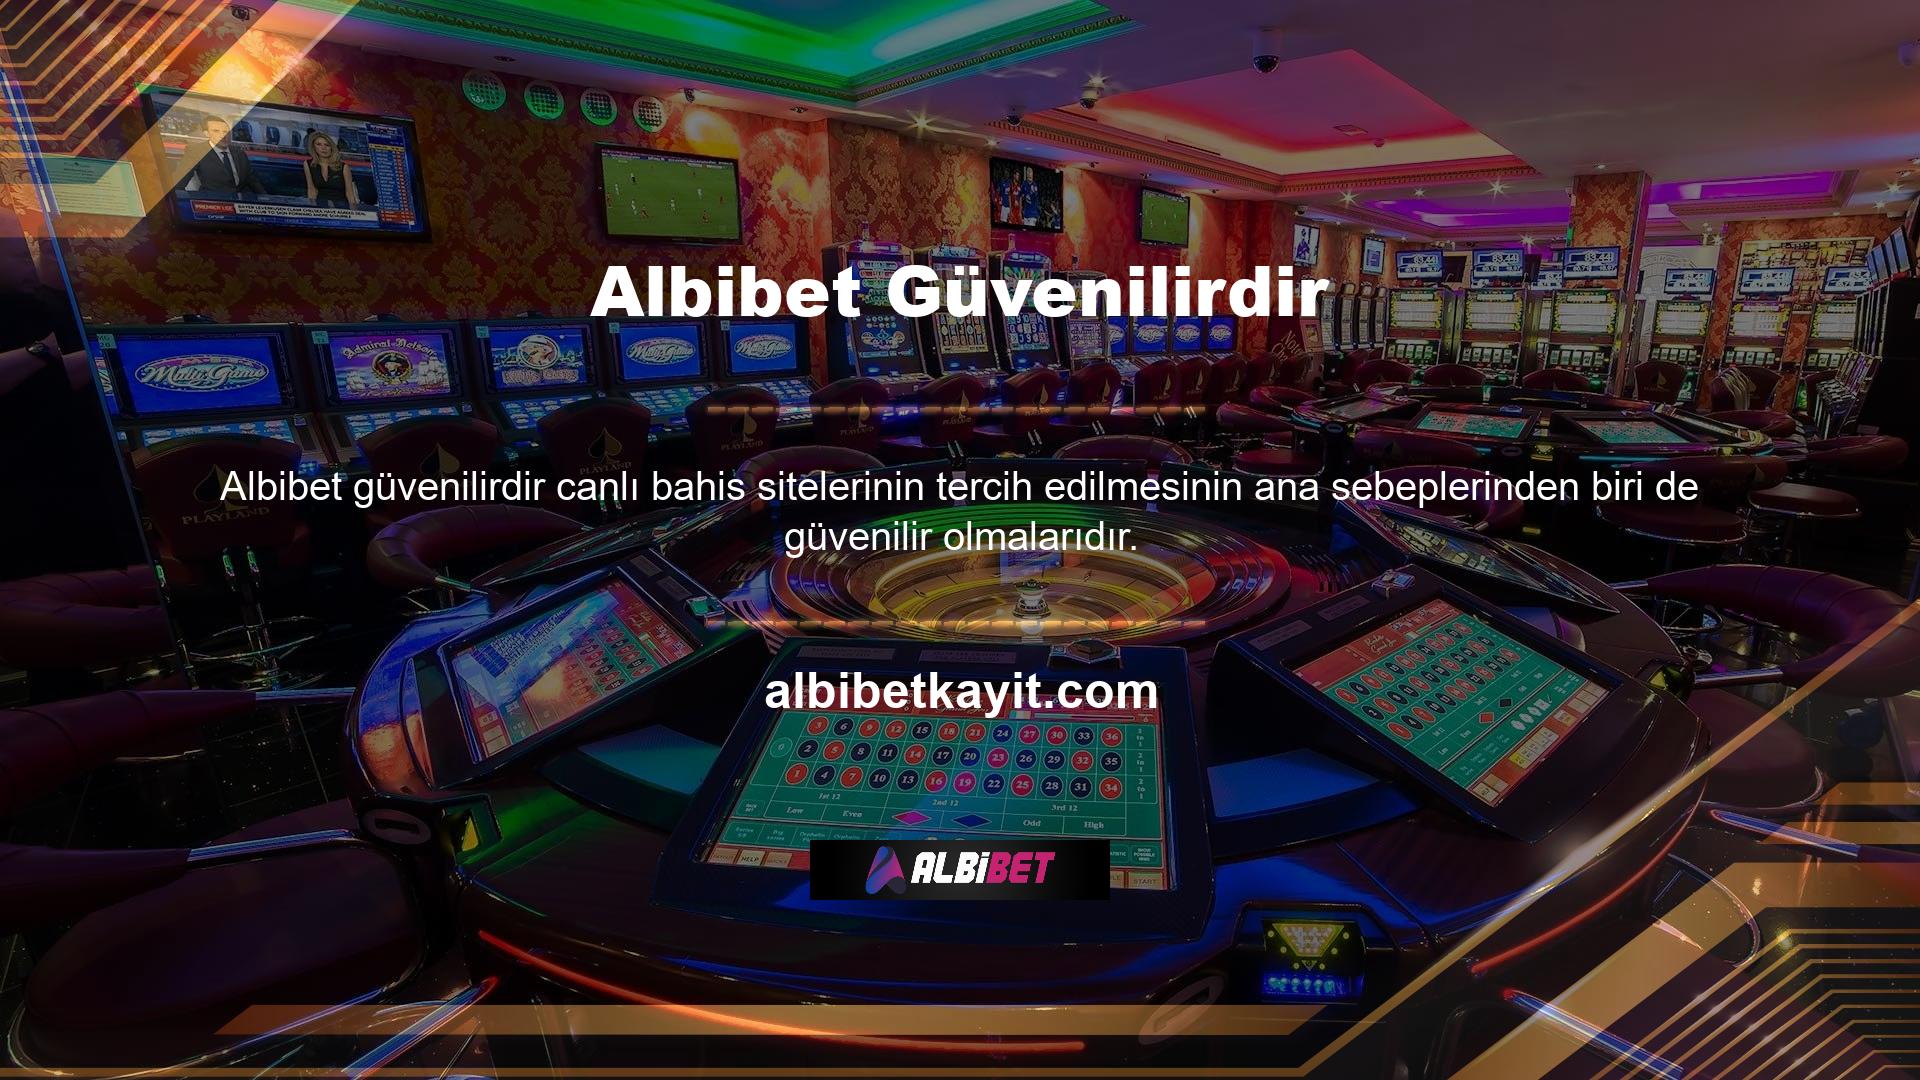 Yazının başında da belirttiğimiz gibi Albibet ülkemizde ve dünyada en popüler sitelerden biridir